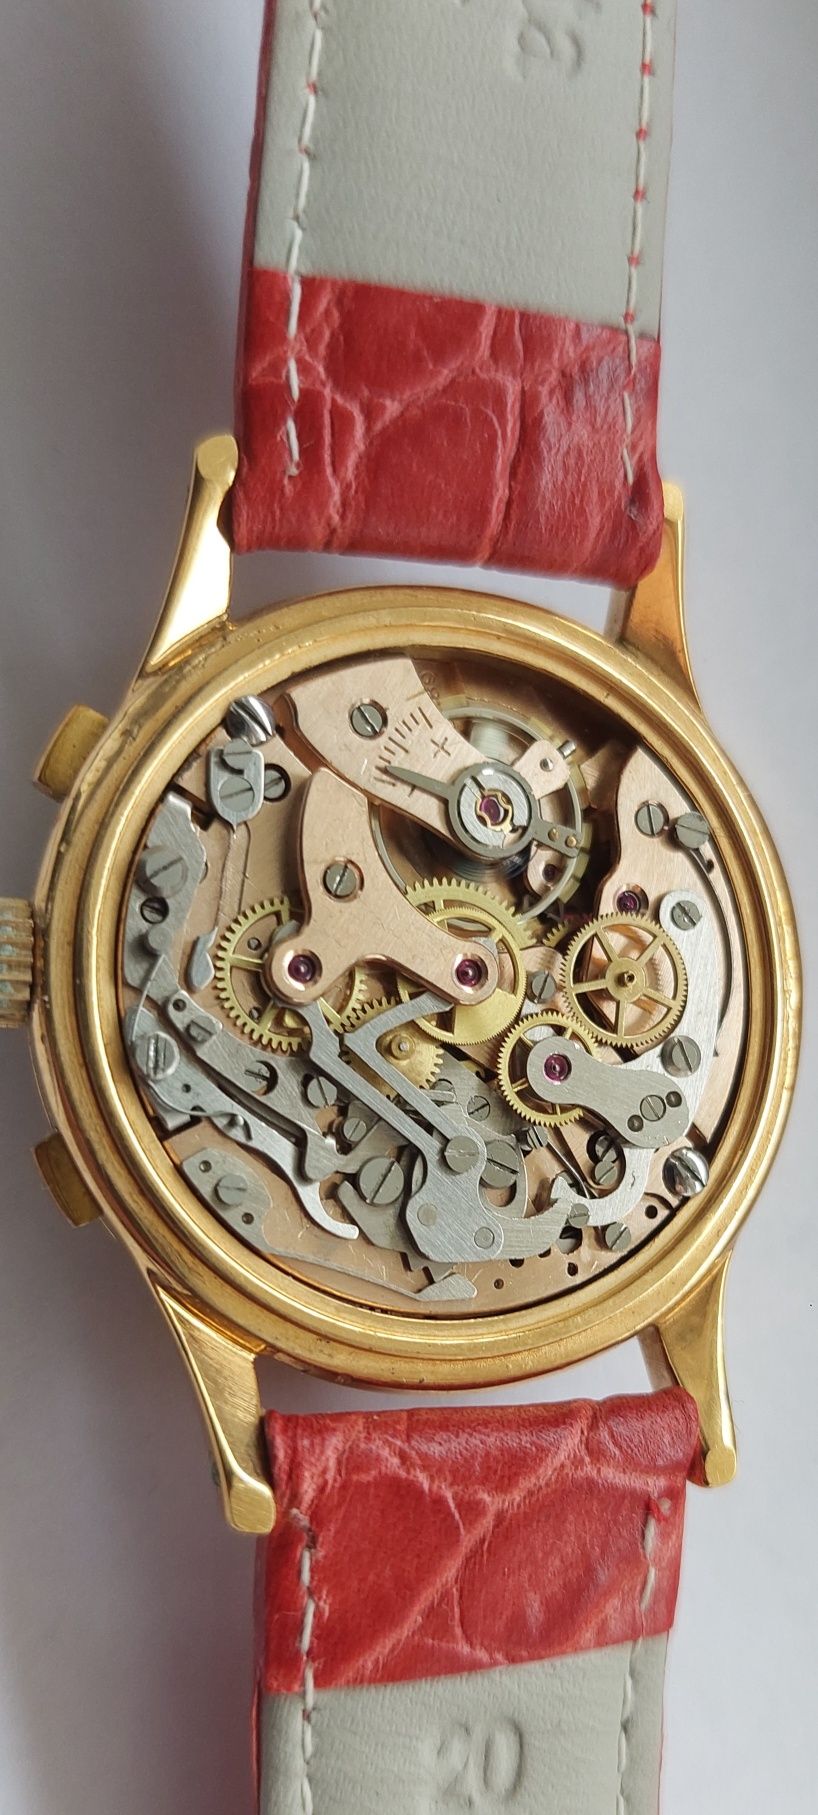 Zegarek Difor geneve chronograf piękny